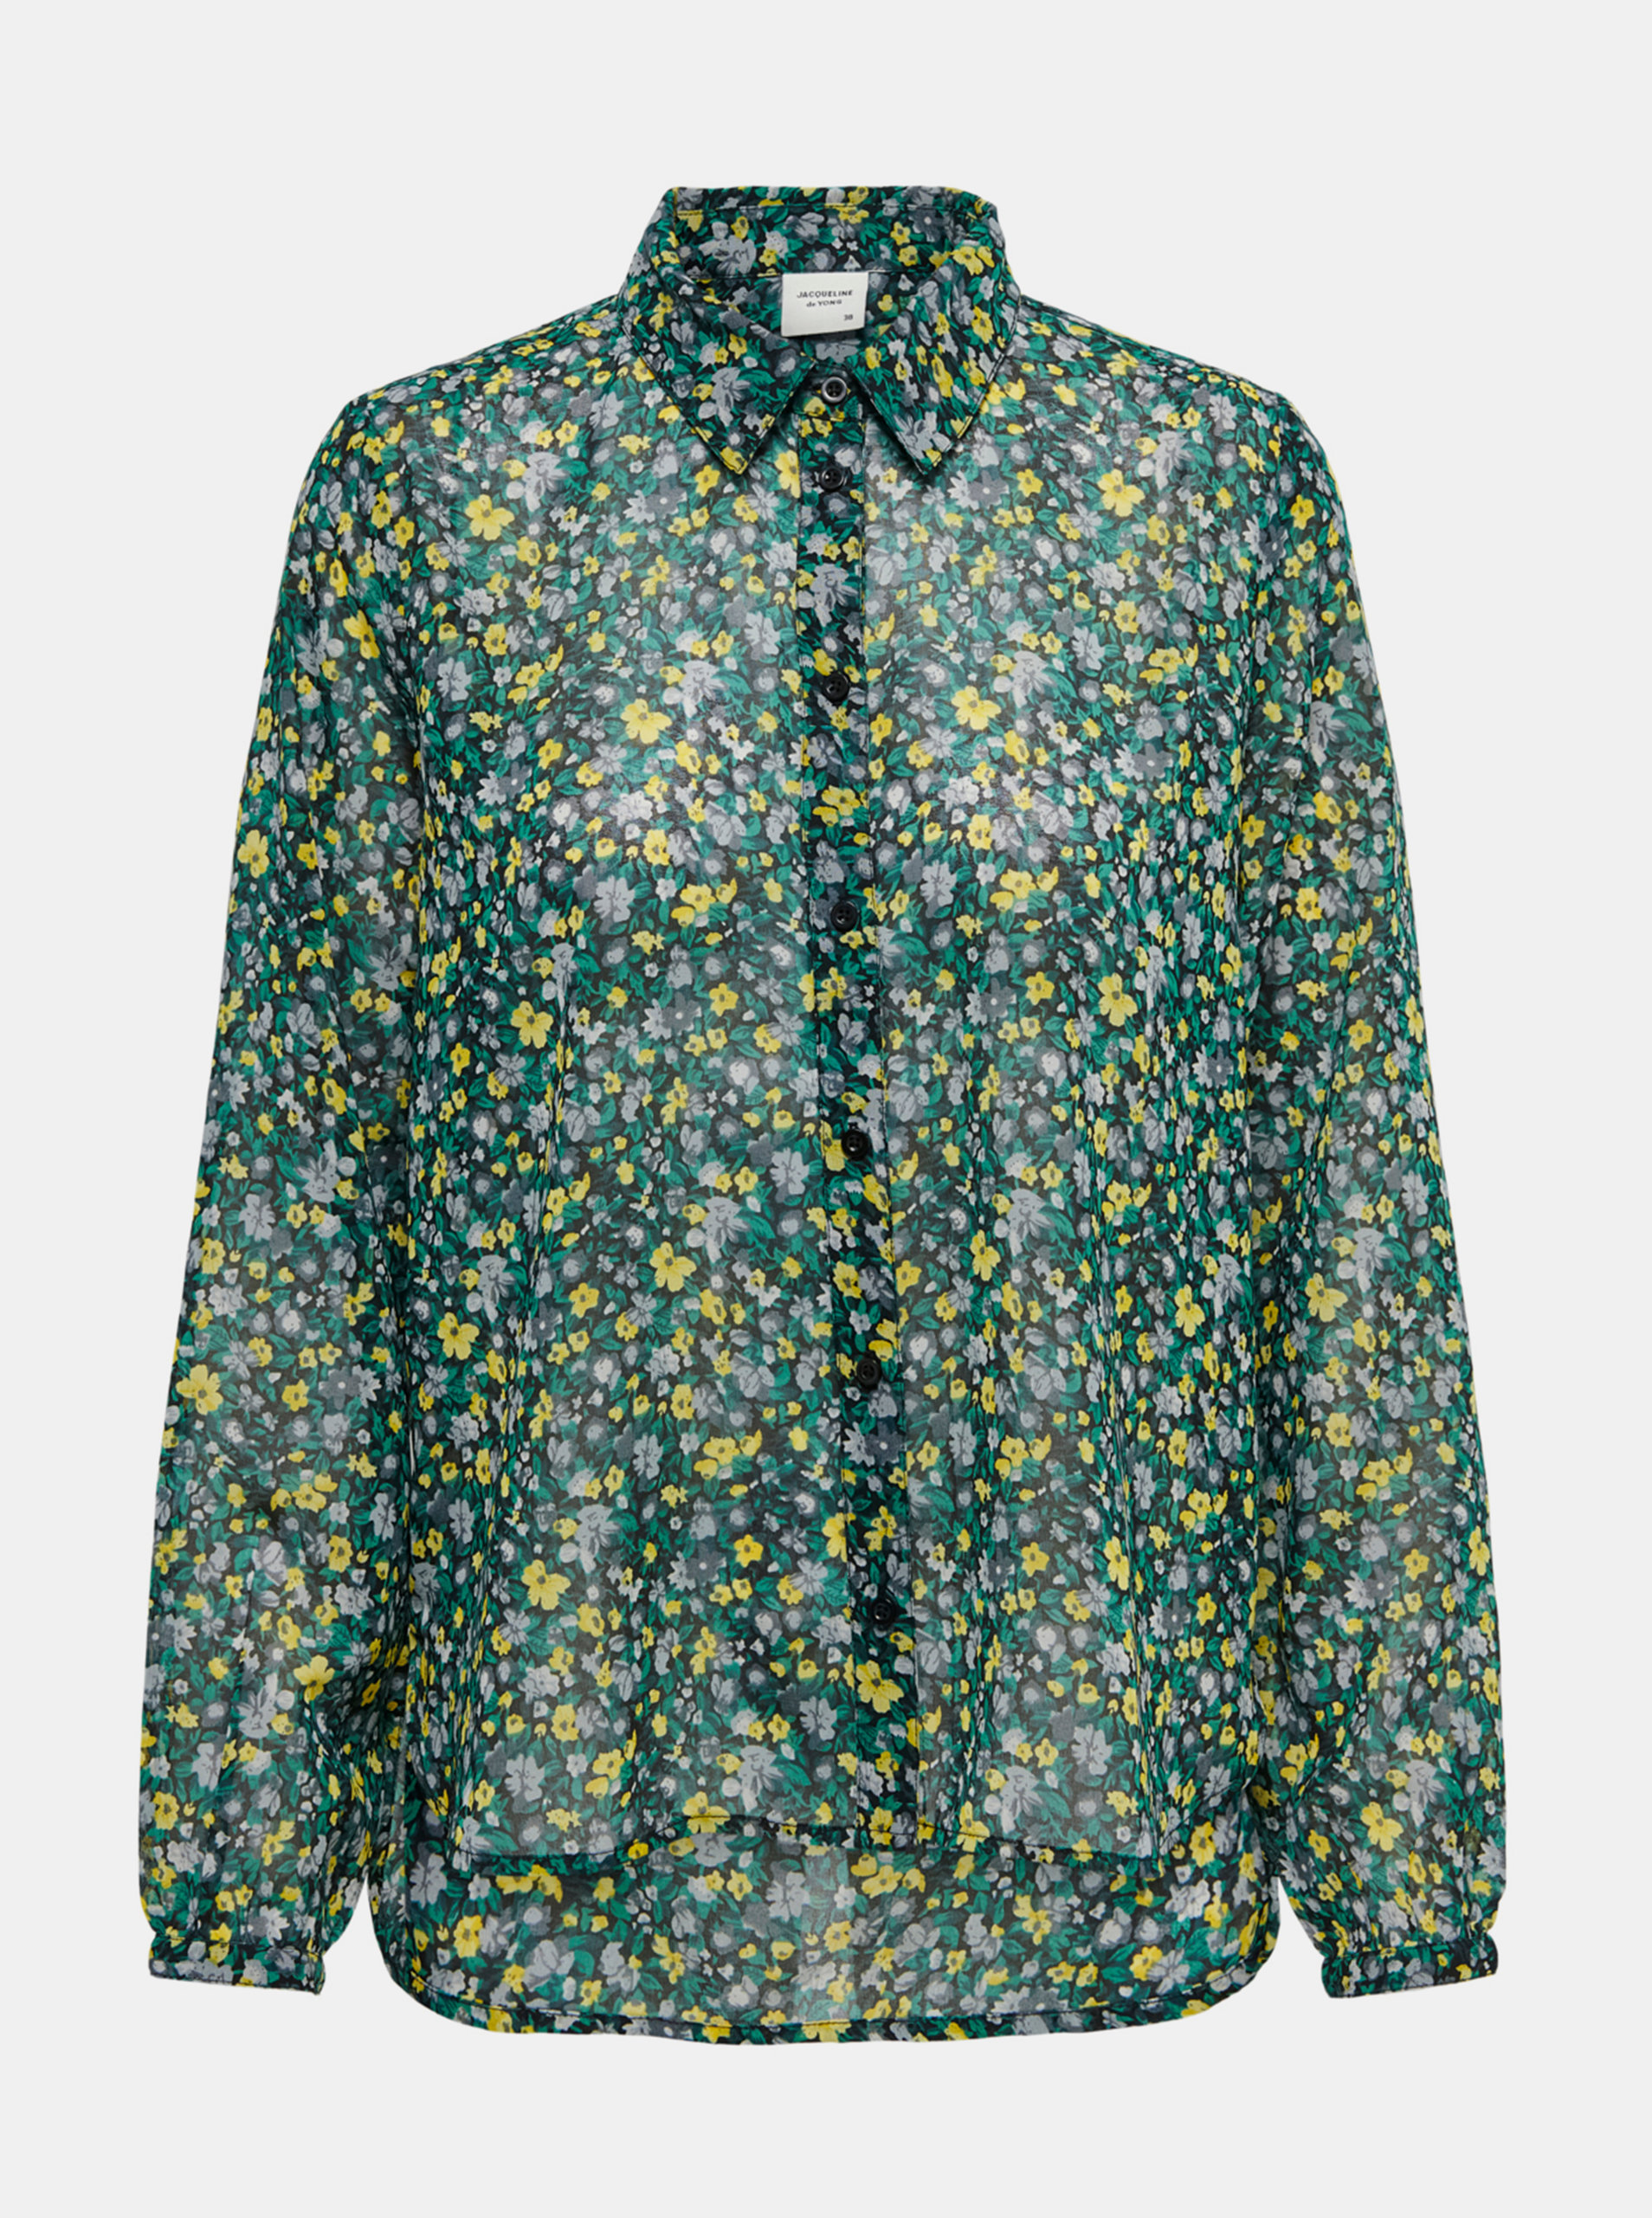 Zelená květovaná průsvitná košile Jacqueline de Yong-Anne